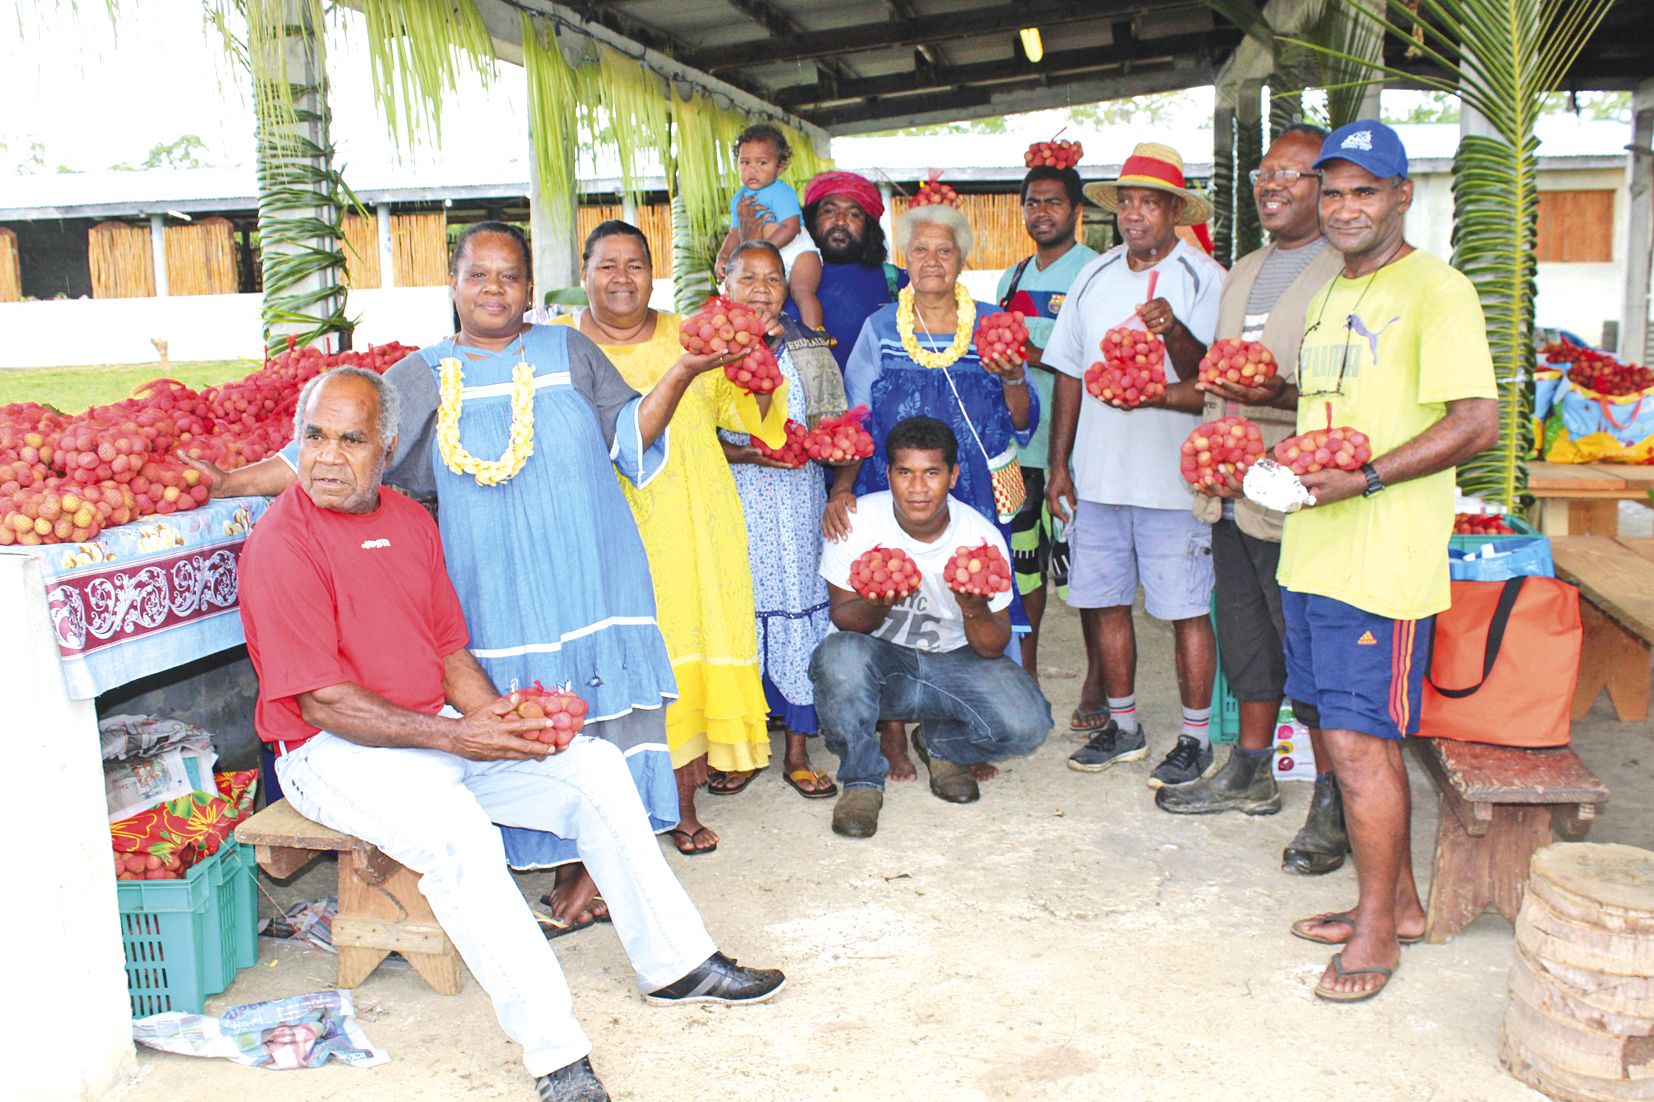 Le Comité organisateur présente fièrement les fruits bien rouges et juteux de la tribu. Près de 1,6 tonne a été récoltée pour la sixième édition de la Fête du letchi de la tribu de Hnacaöm.